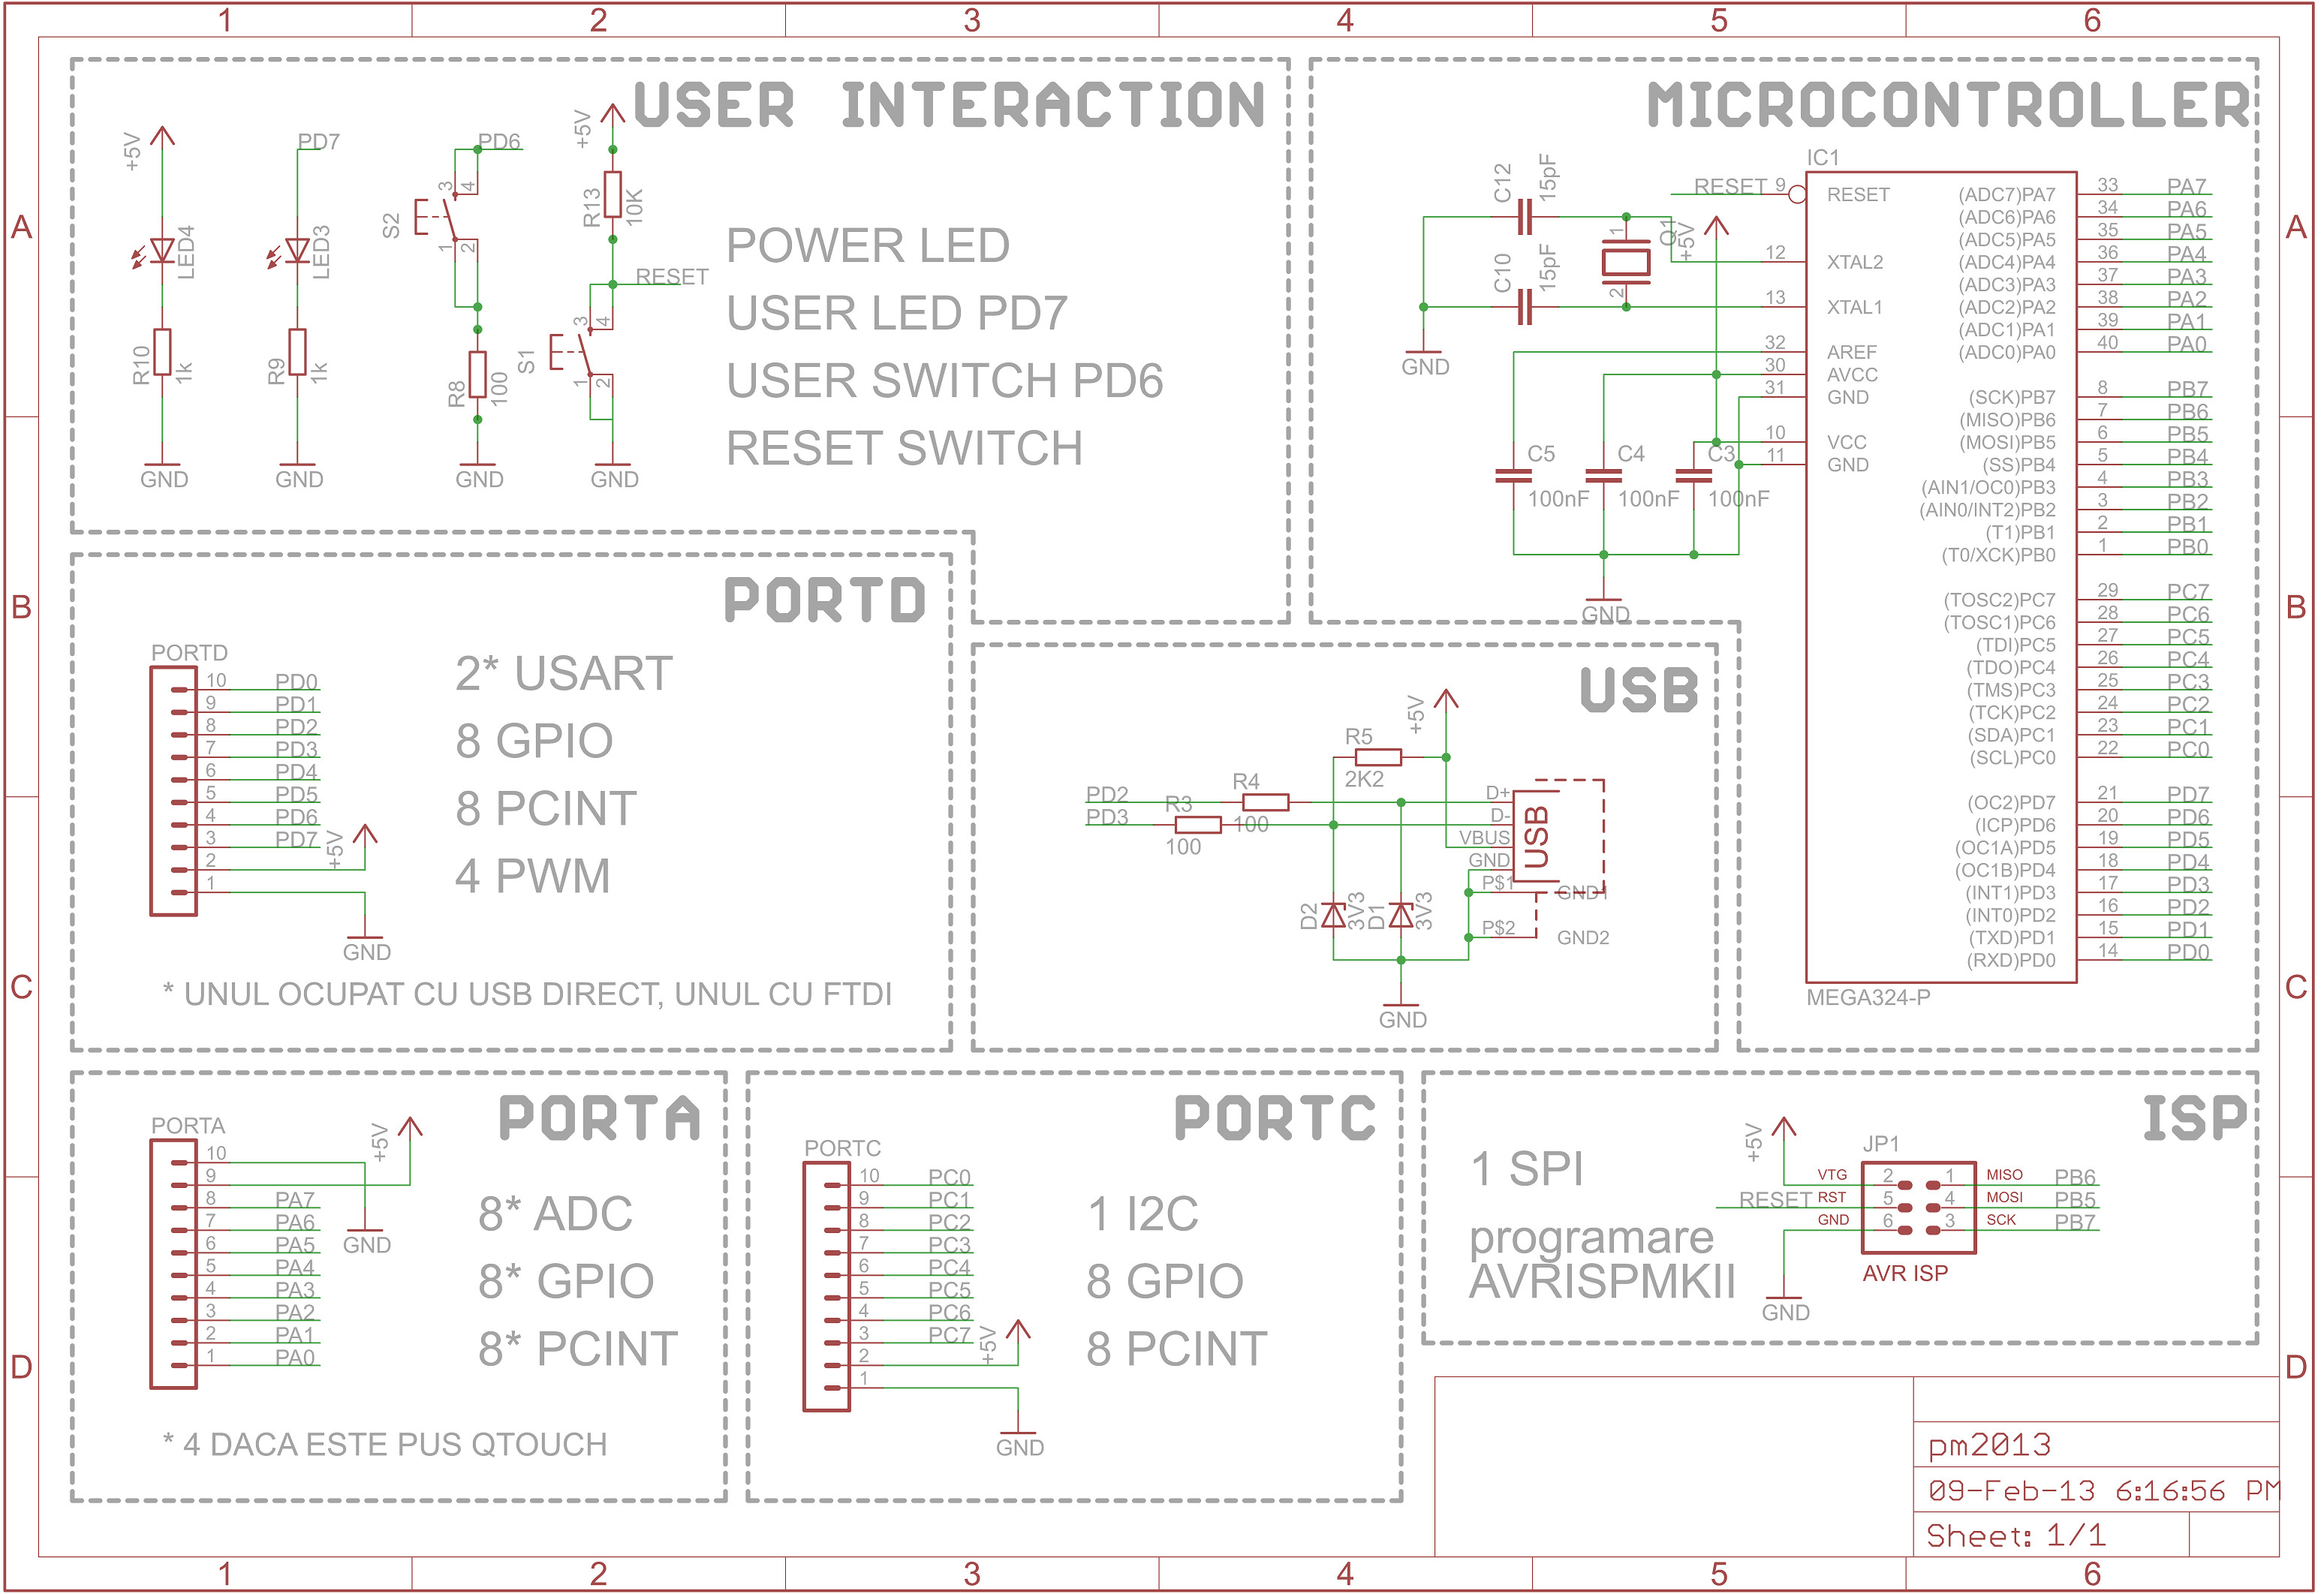 pm:prj2013:amocanu:alexo:schema_microcontroler.png